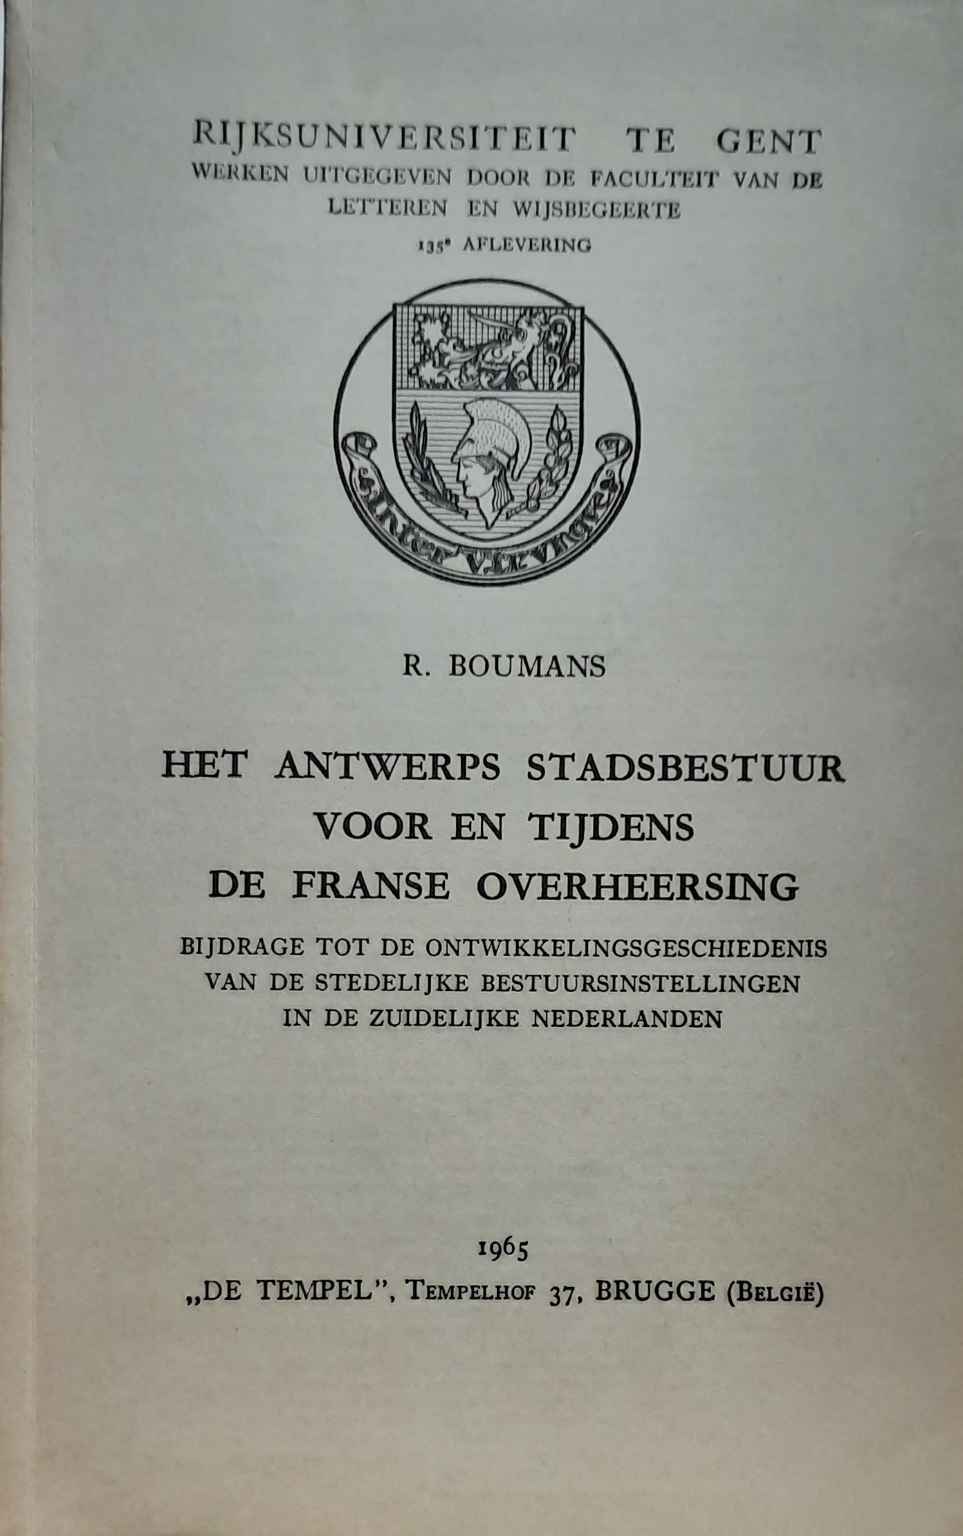 Book cover 202107312300: BOUMANS René Dr | Het Antwerps stadsbestuur voor en tijdens de Franse overheersing. Bijdrage tot de ontwikkelingsgeschiedenis van de stedelijke bestuursinstellingen in de Zuidelijke Nederlanden